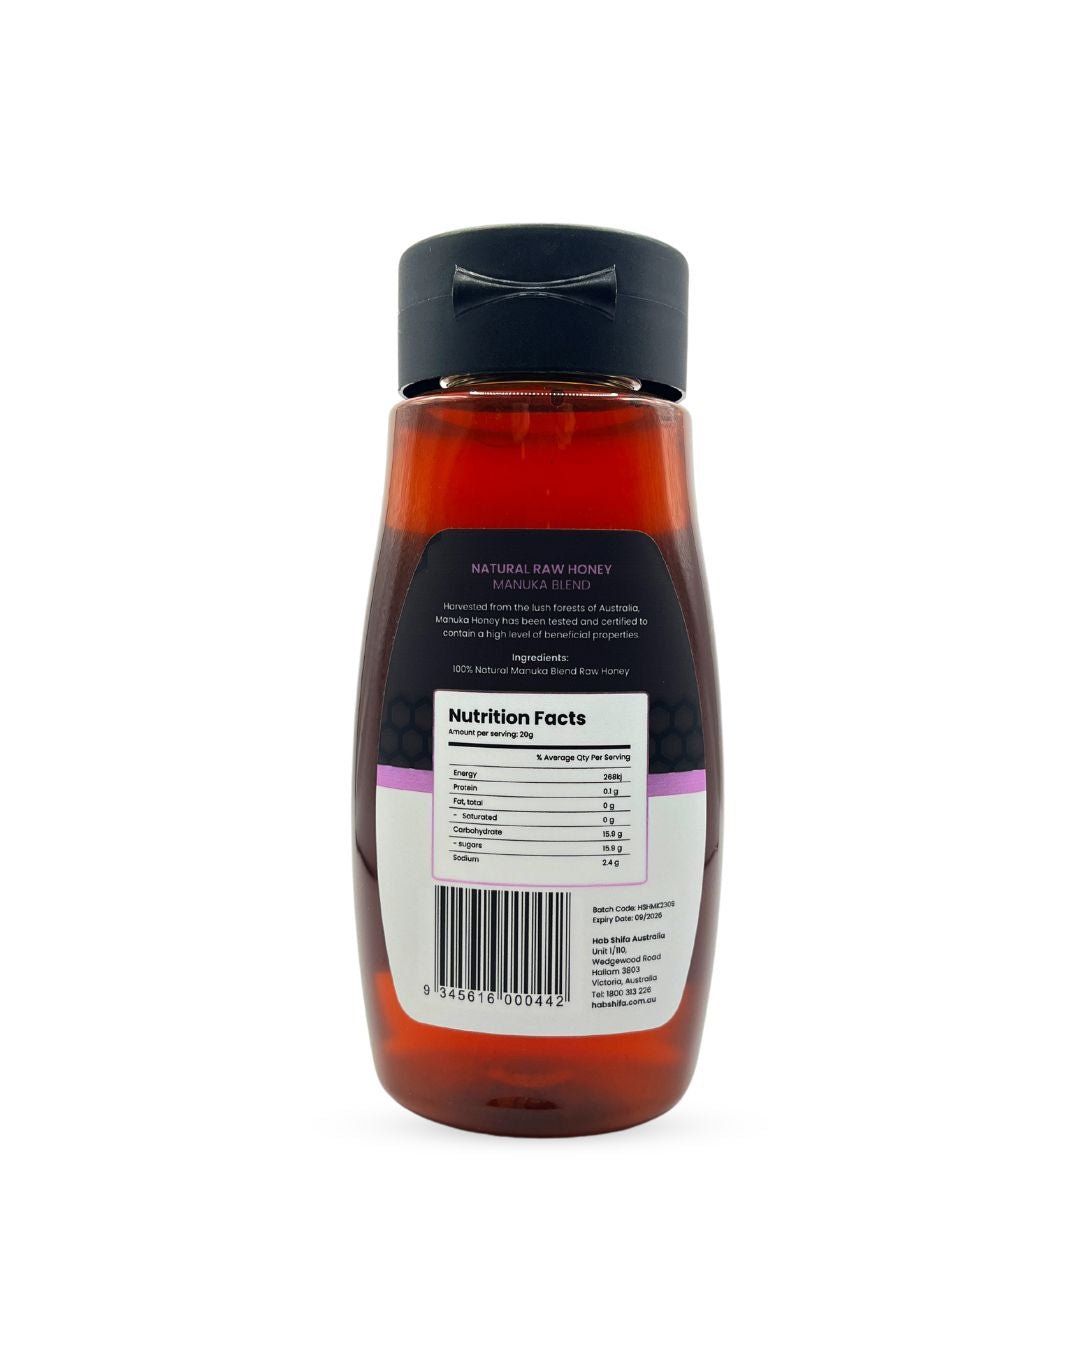 Natural Raw Honey - Manuka Blend 500g - Hab Shifa